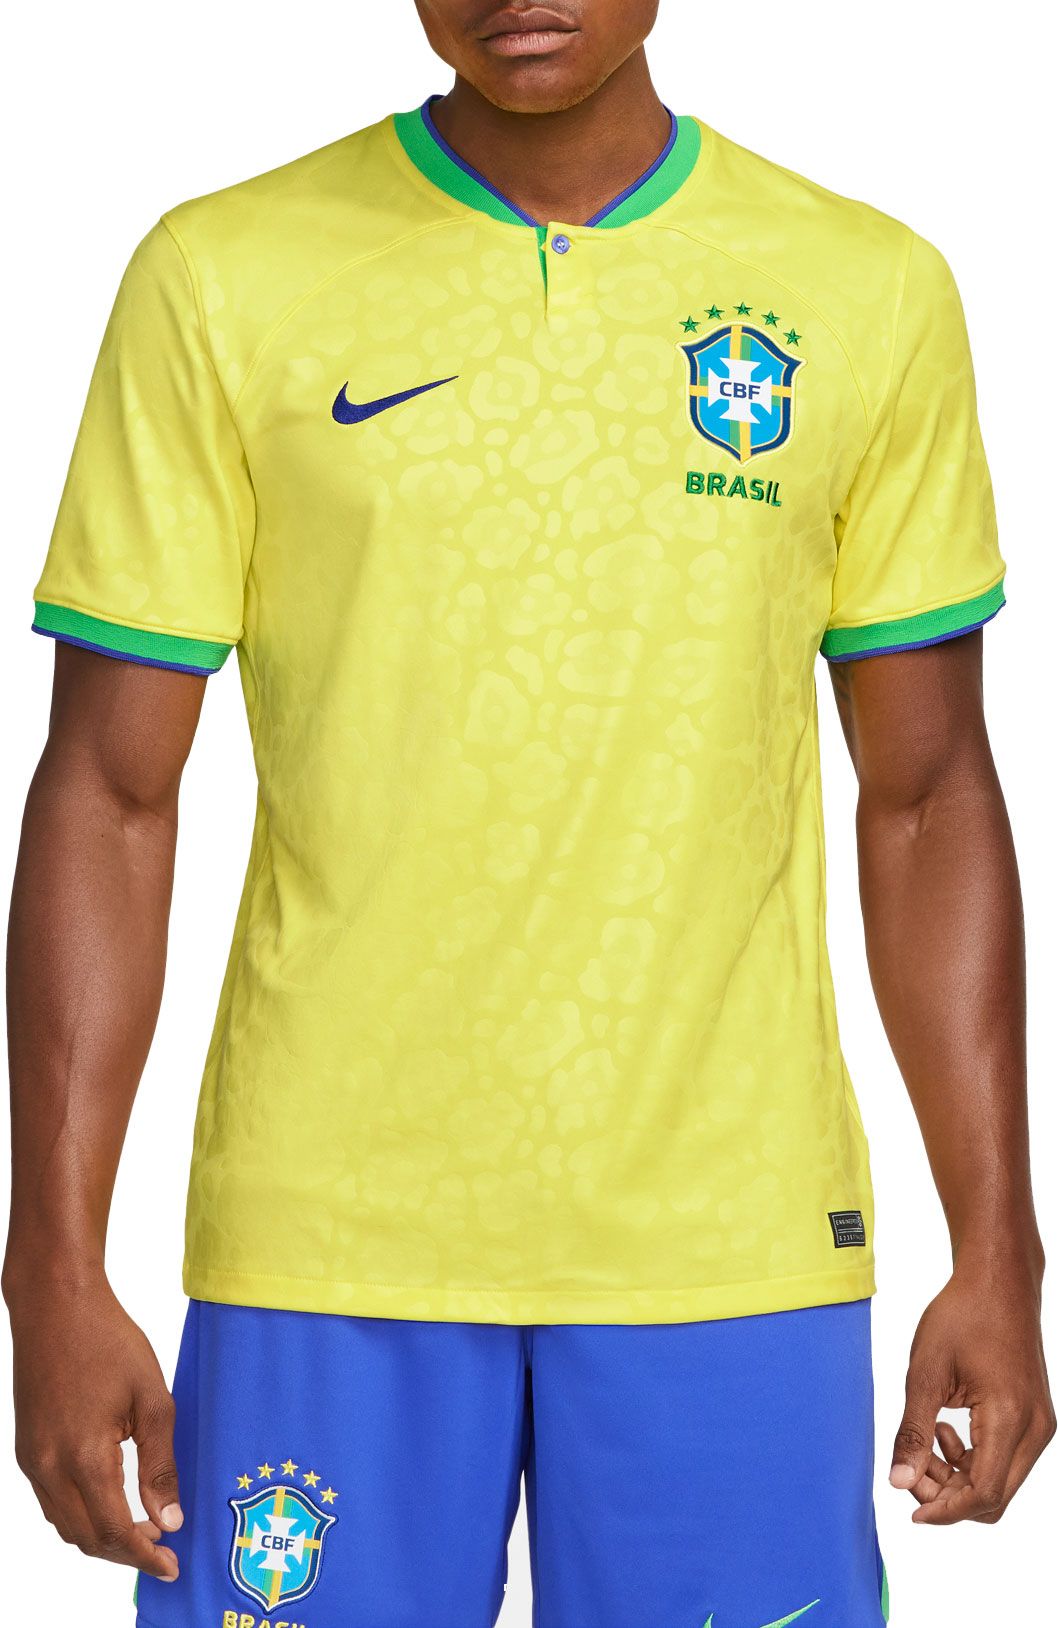 brazil replica jersey